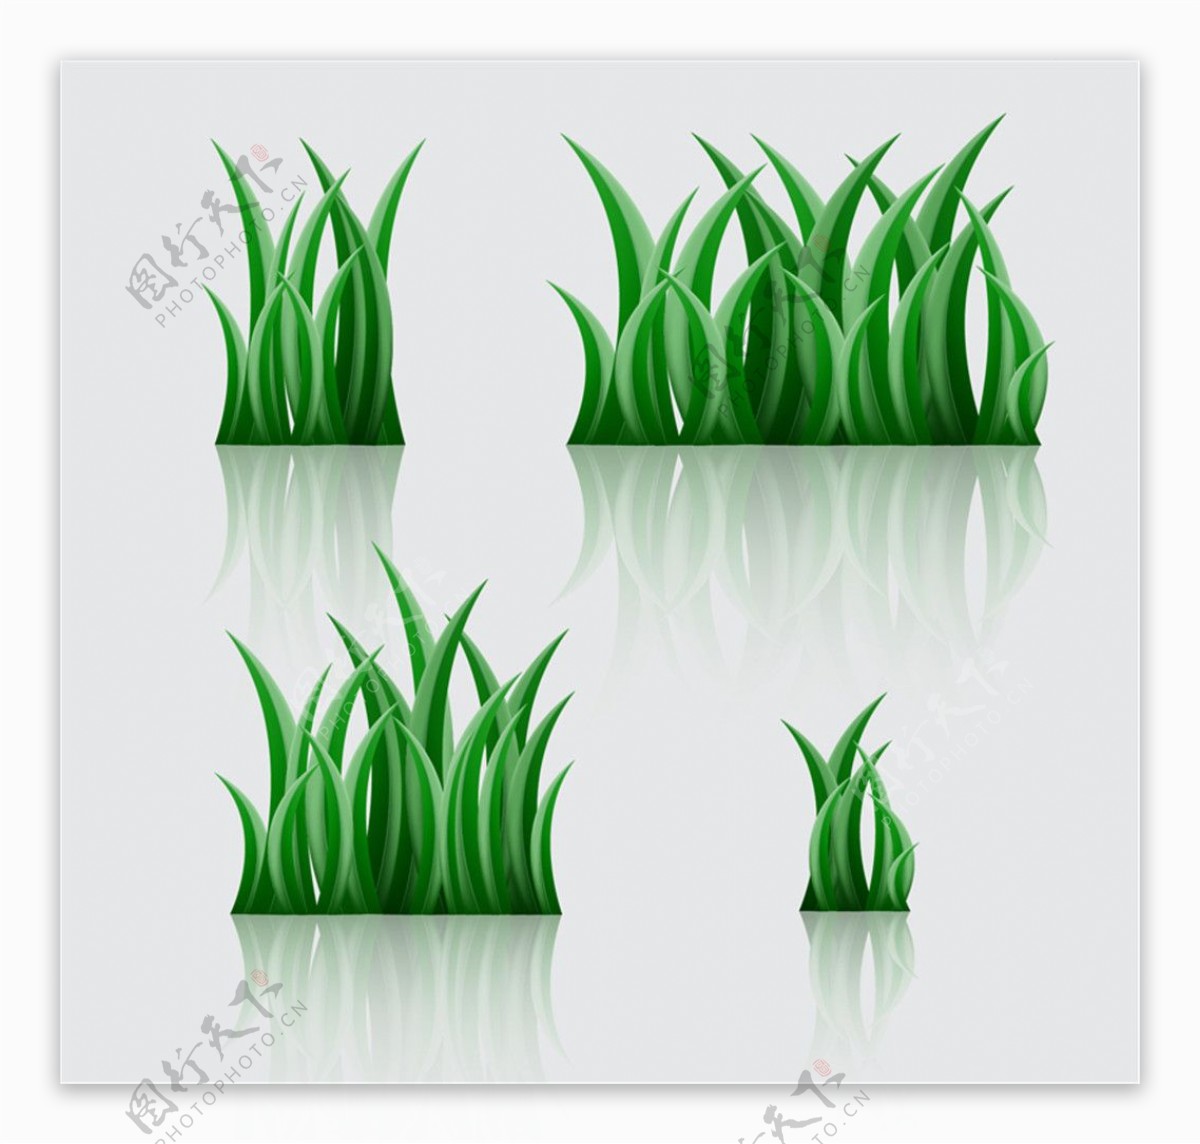 4款绿色草丛设计矢量素材